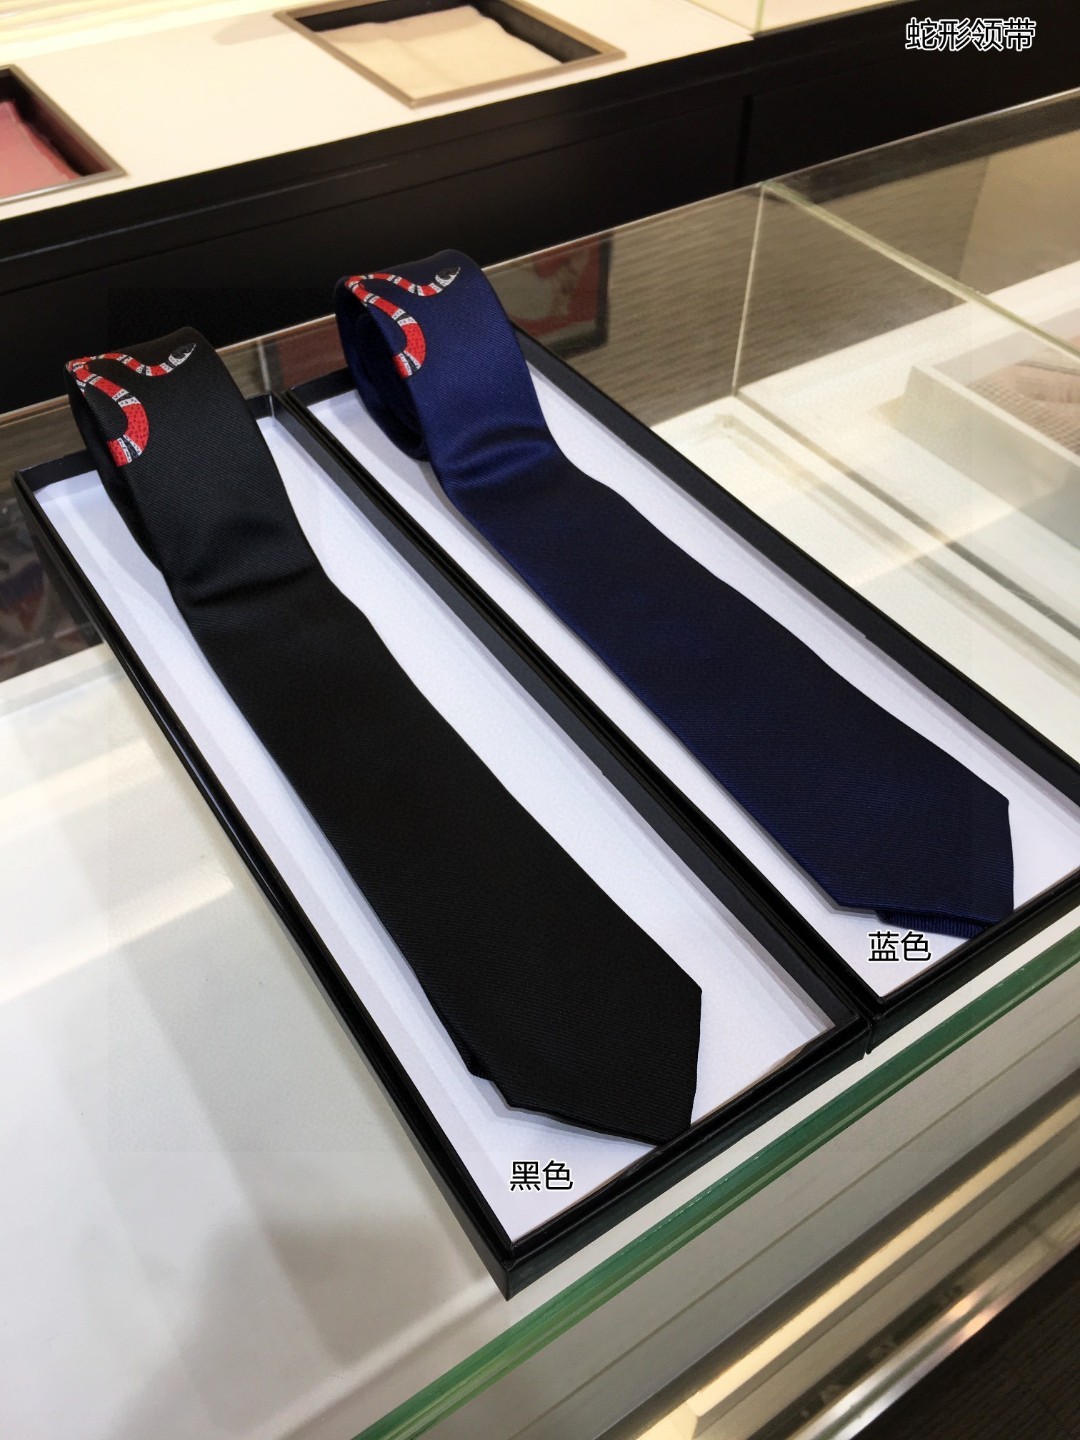 特价G家男士领带系列蛇形领带稀有采用经典主题动物绣花展现精湛手工与时尚优雅的理想选择这款领带将标志性完美